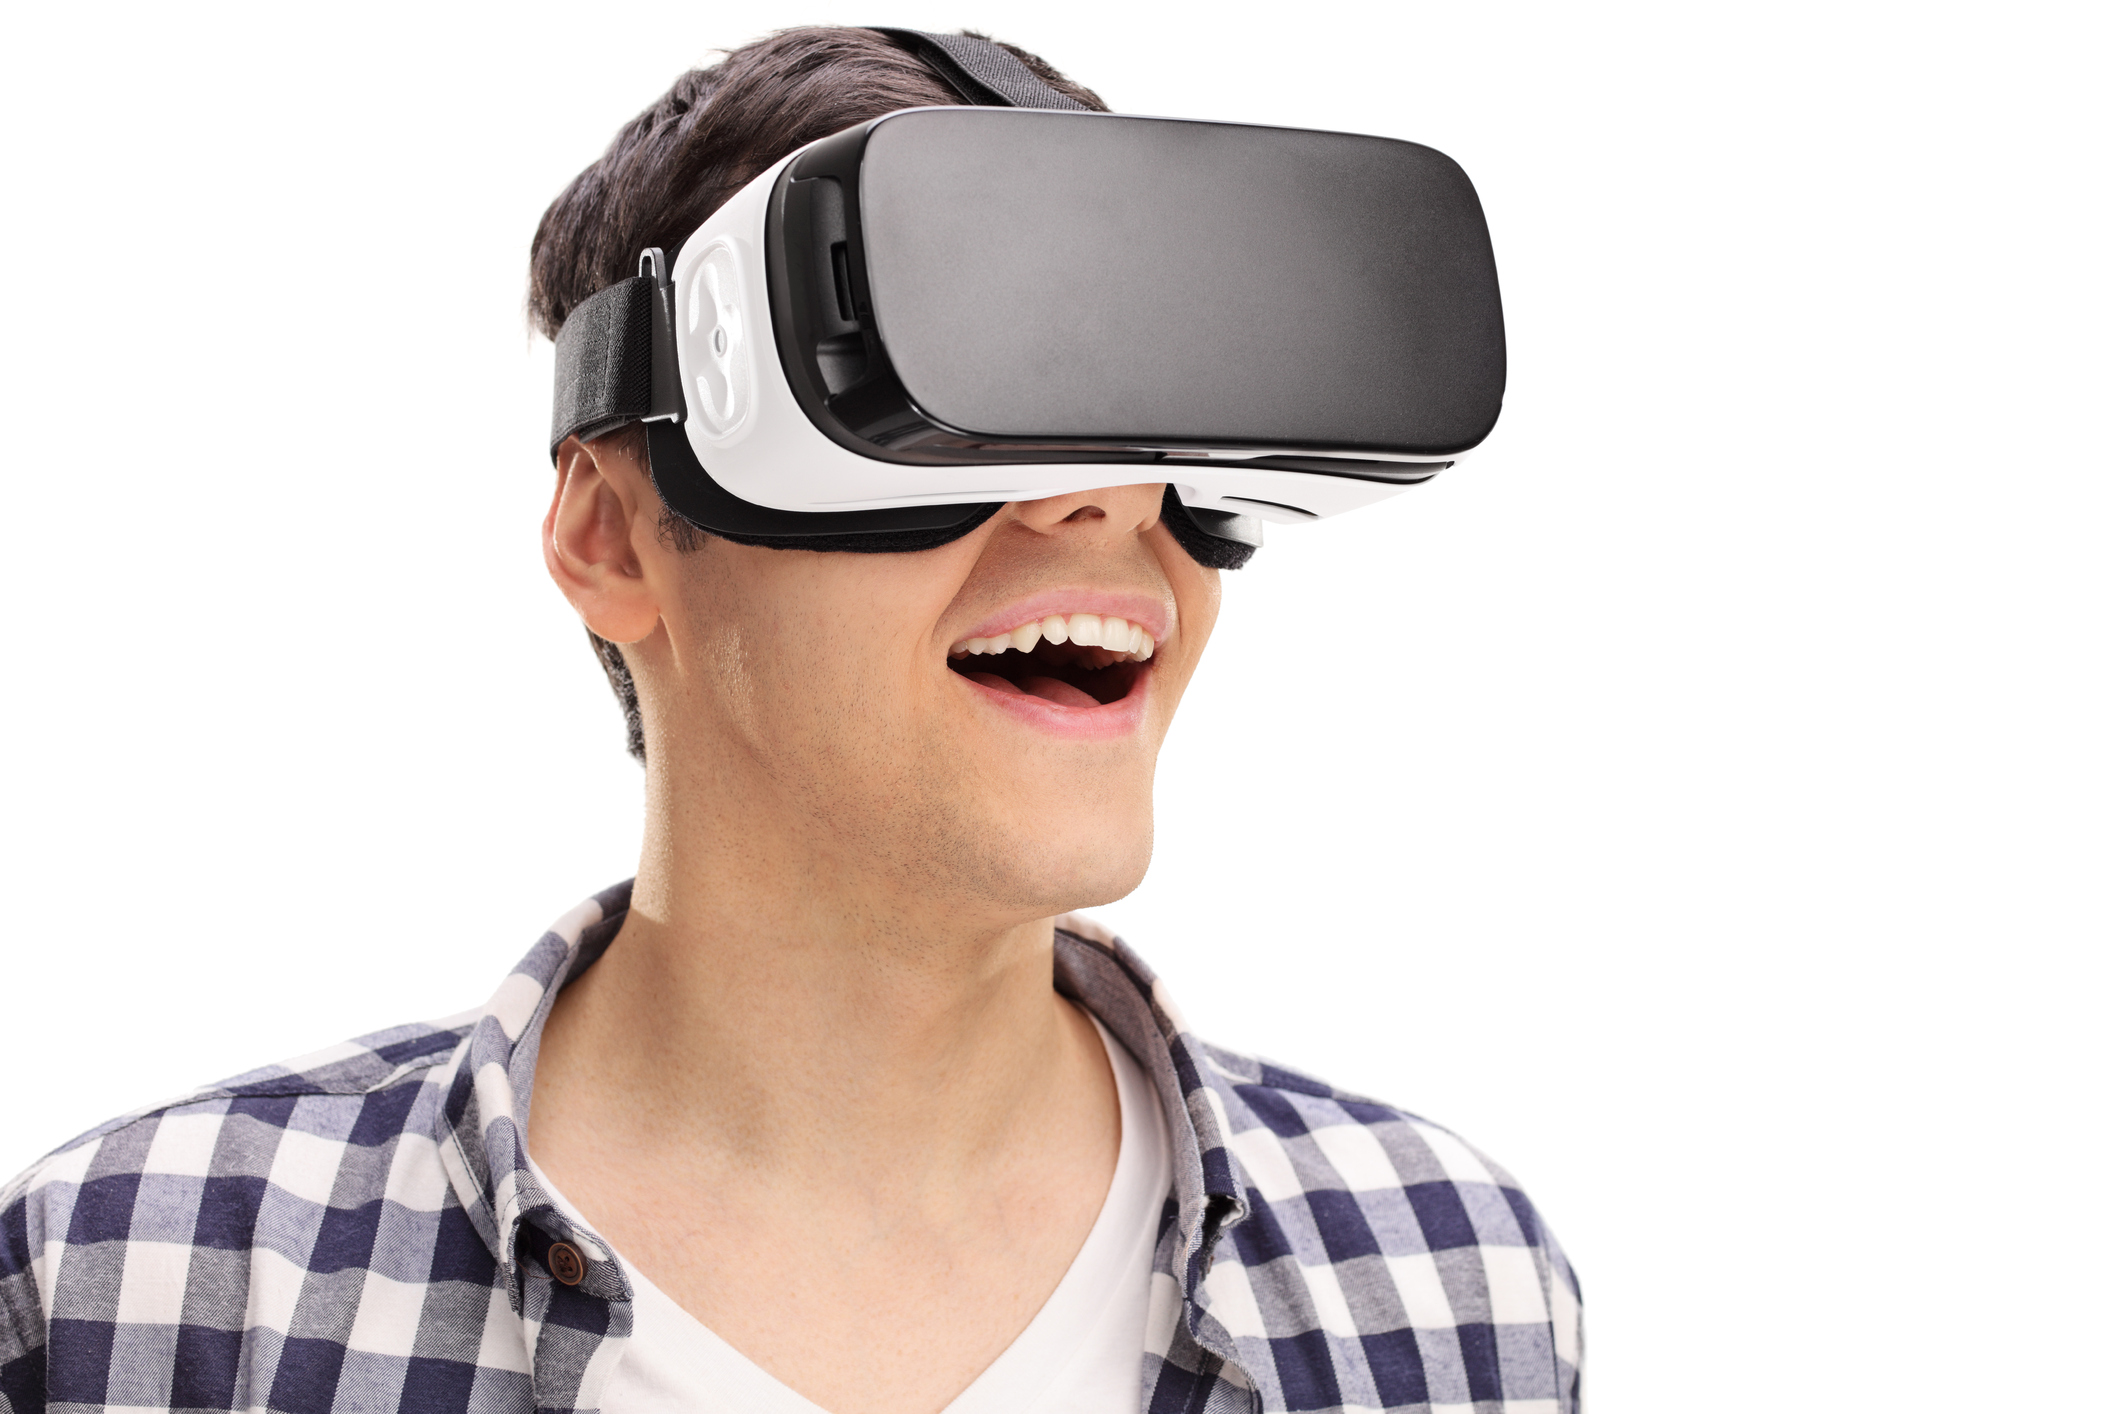 Эпл виар очки. Очки виртуальной реальности Эппл. Человек с виар очками. Очки виртуальной реальности на белом фоне. Очки виртуальной реальности на человеке.